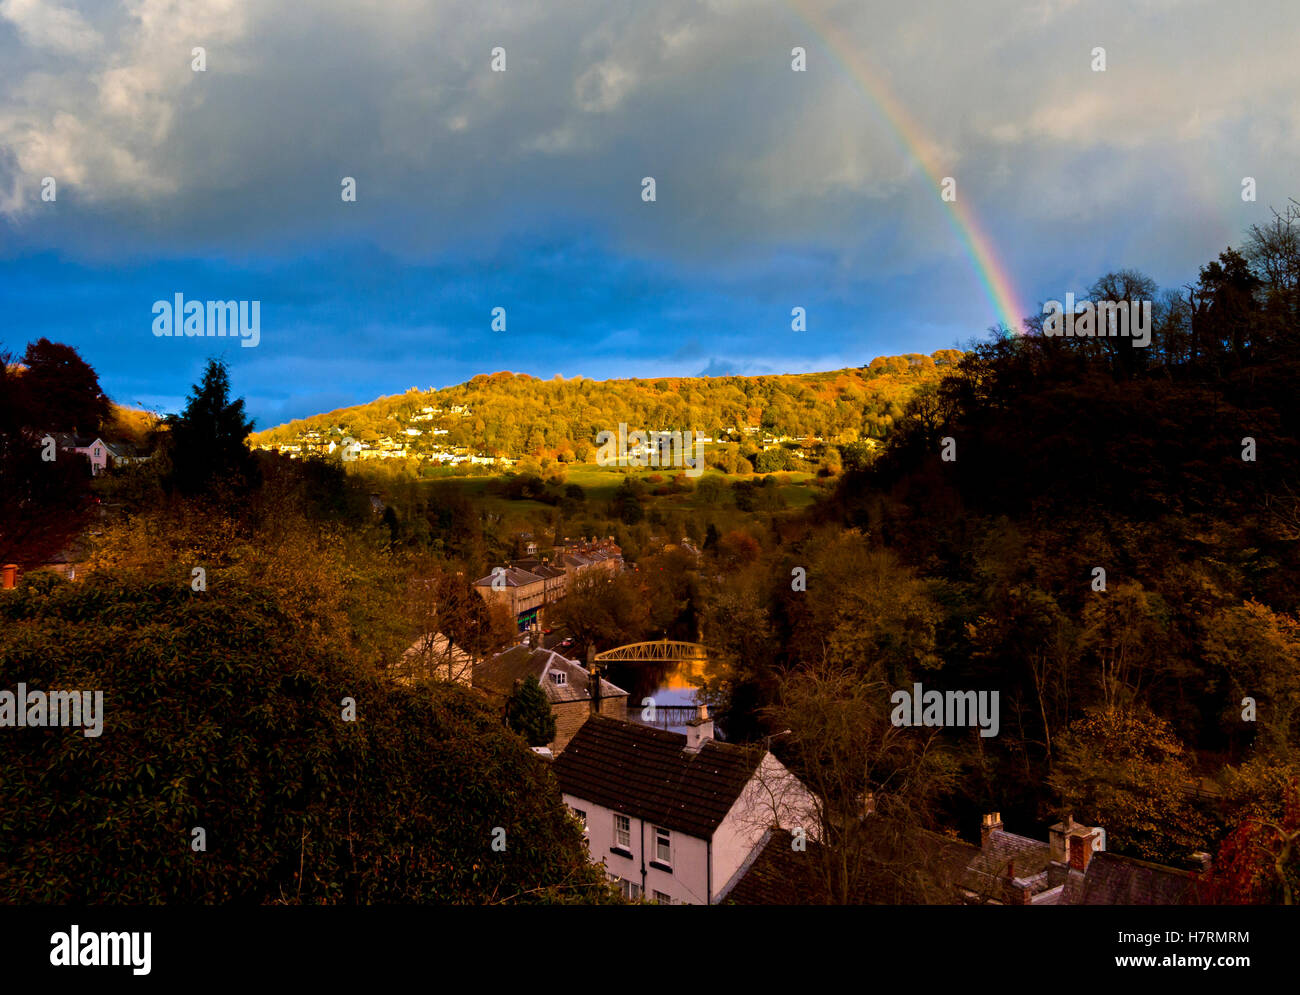 Gewitterhimmel und Regenbogen über Matlock Bath und Starkholmes im Peak District Derbyshire Dales England UK Stockfoto